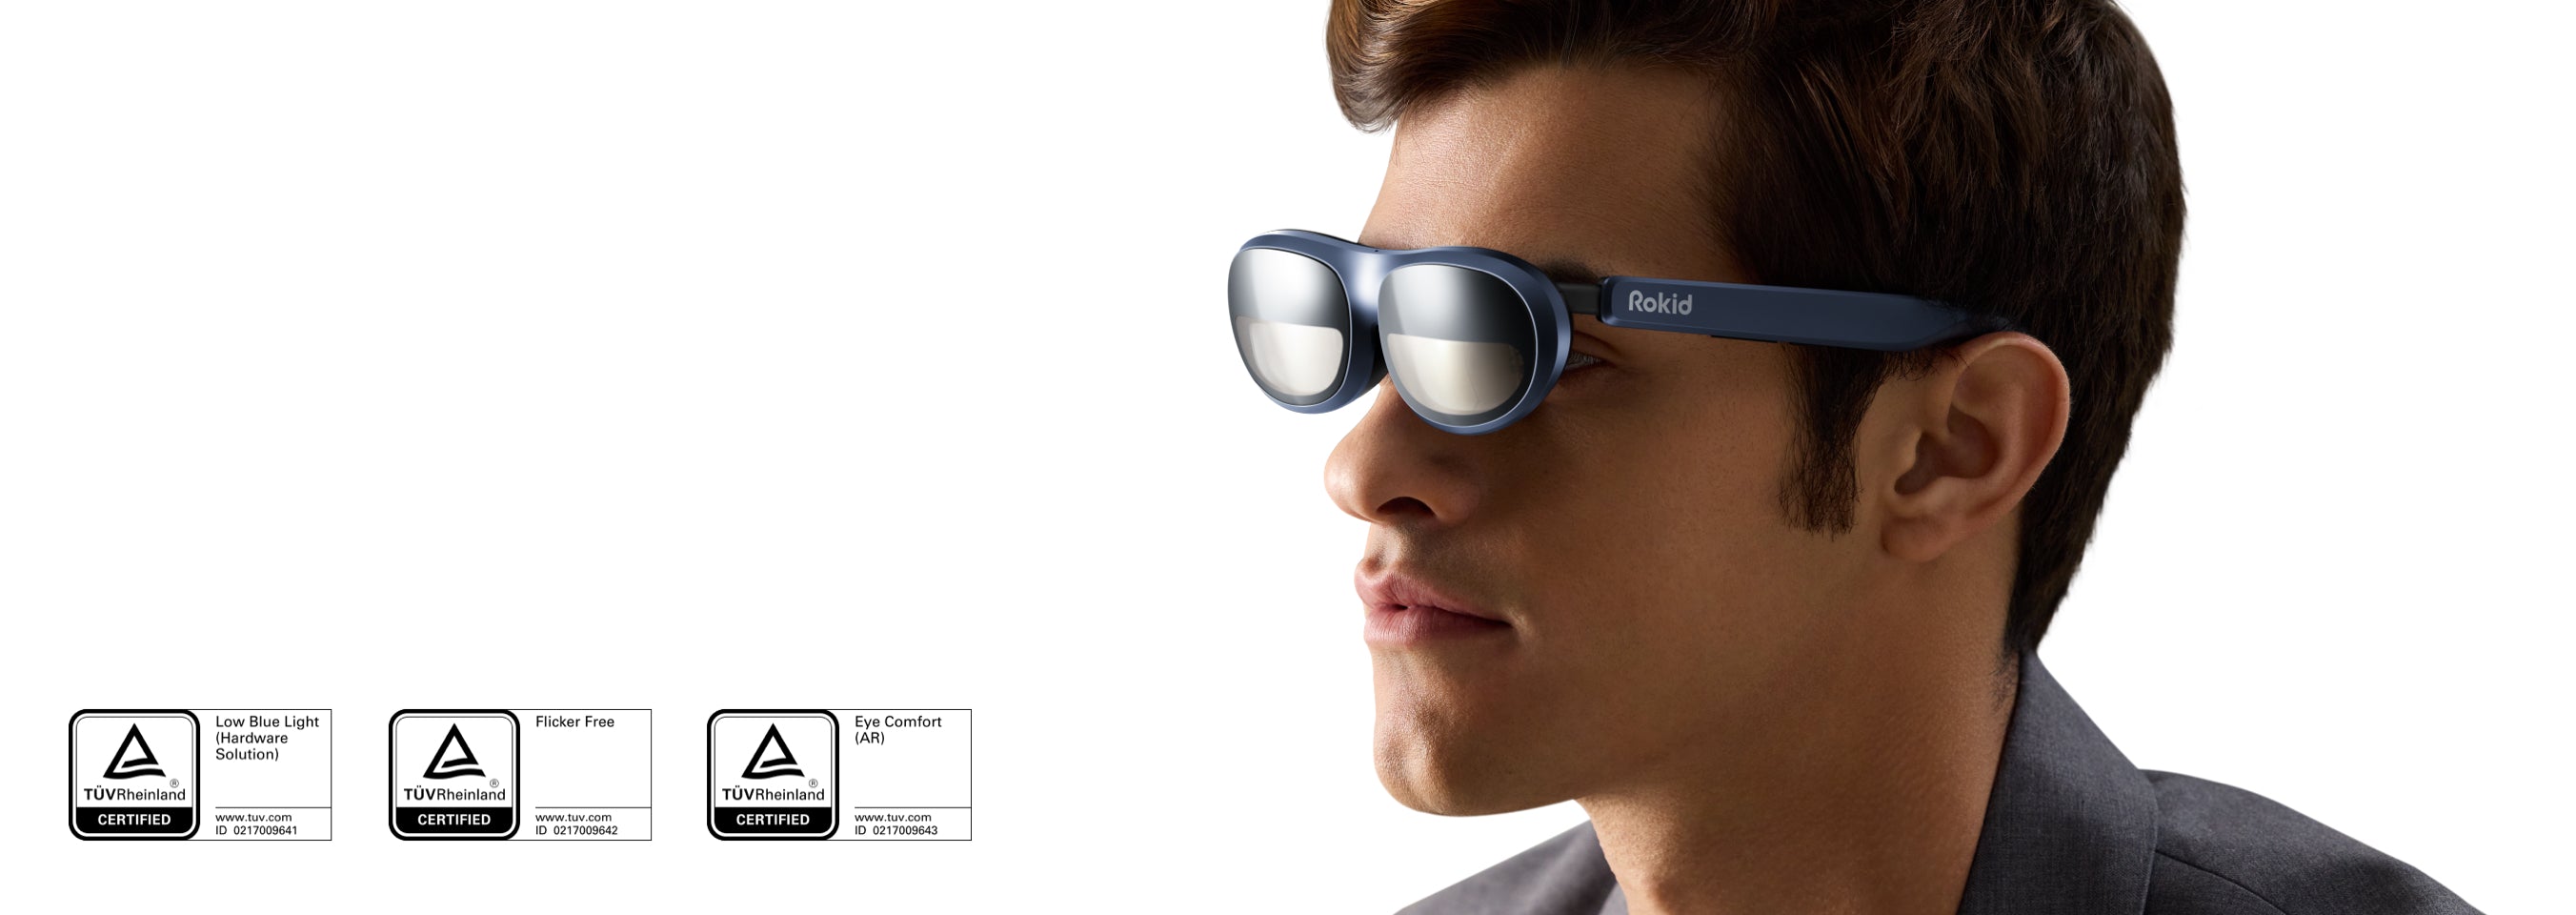 Rokid Max AR çerçeveleri, düşük mavi ışık, titreşimsiz ve sertifikalı göz konforu özelliklerine sahiptir